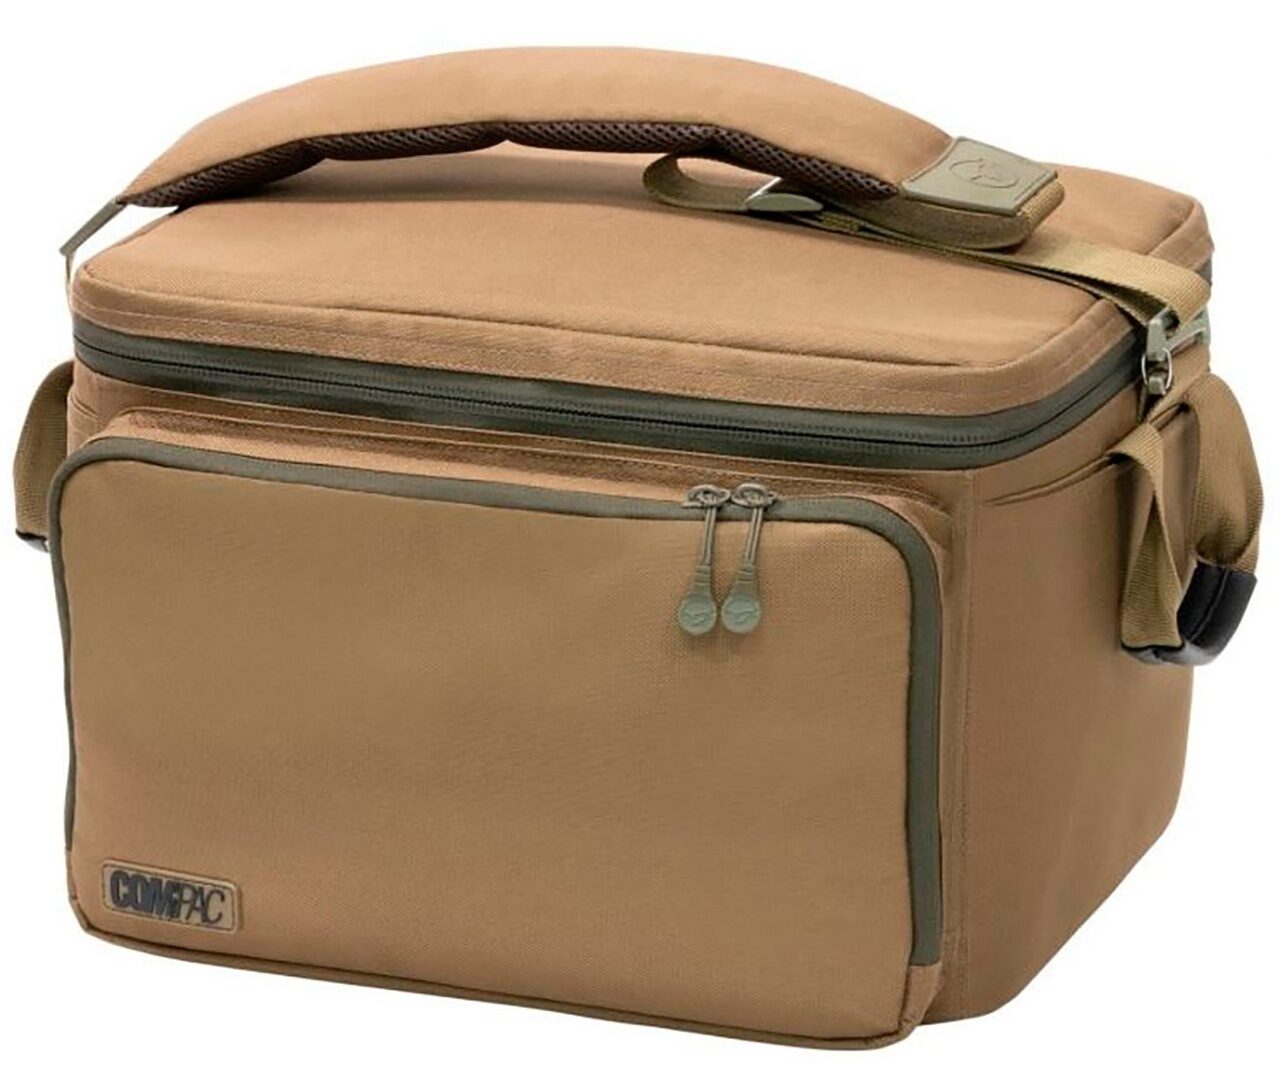 Термо-сумка карповая Большая Korda (Корда) - Compac Cool Bag Large